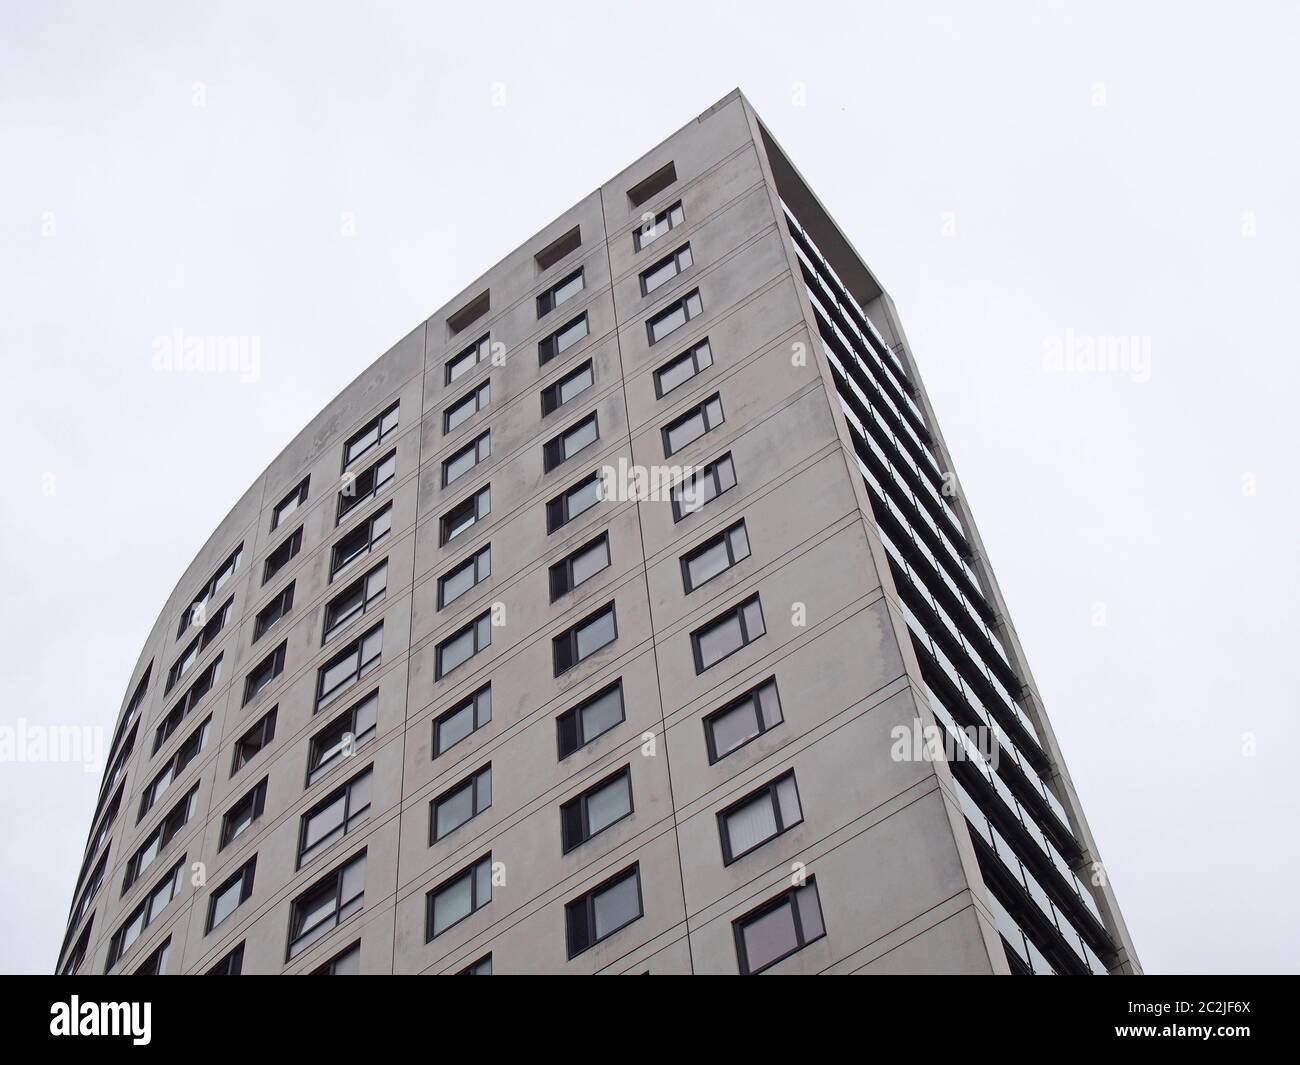 clarence maison un immeuble moderne de 218 pieds de haut, appartement et magasin dans le secteur du quai de leeds contre un ciel gris Banque D'Images